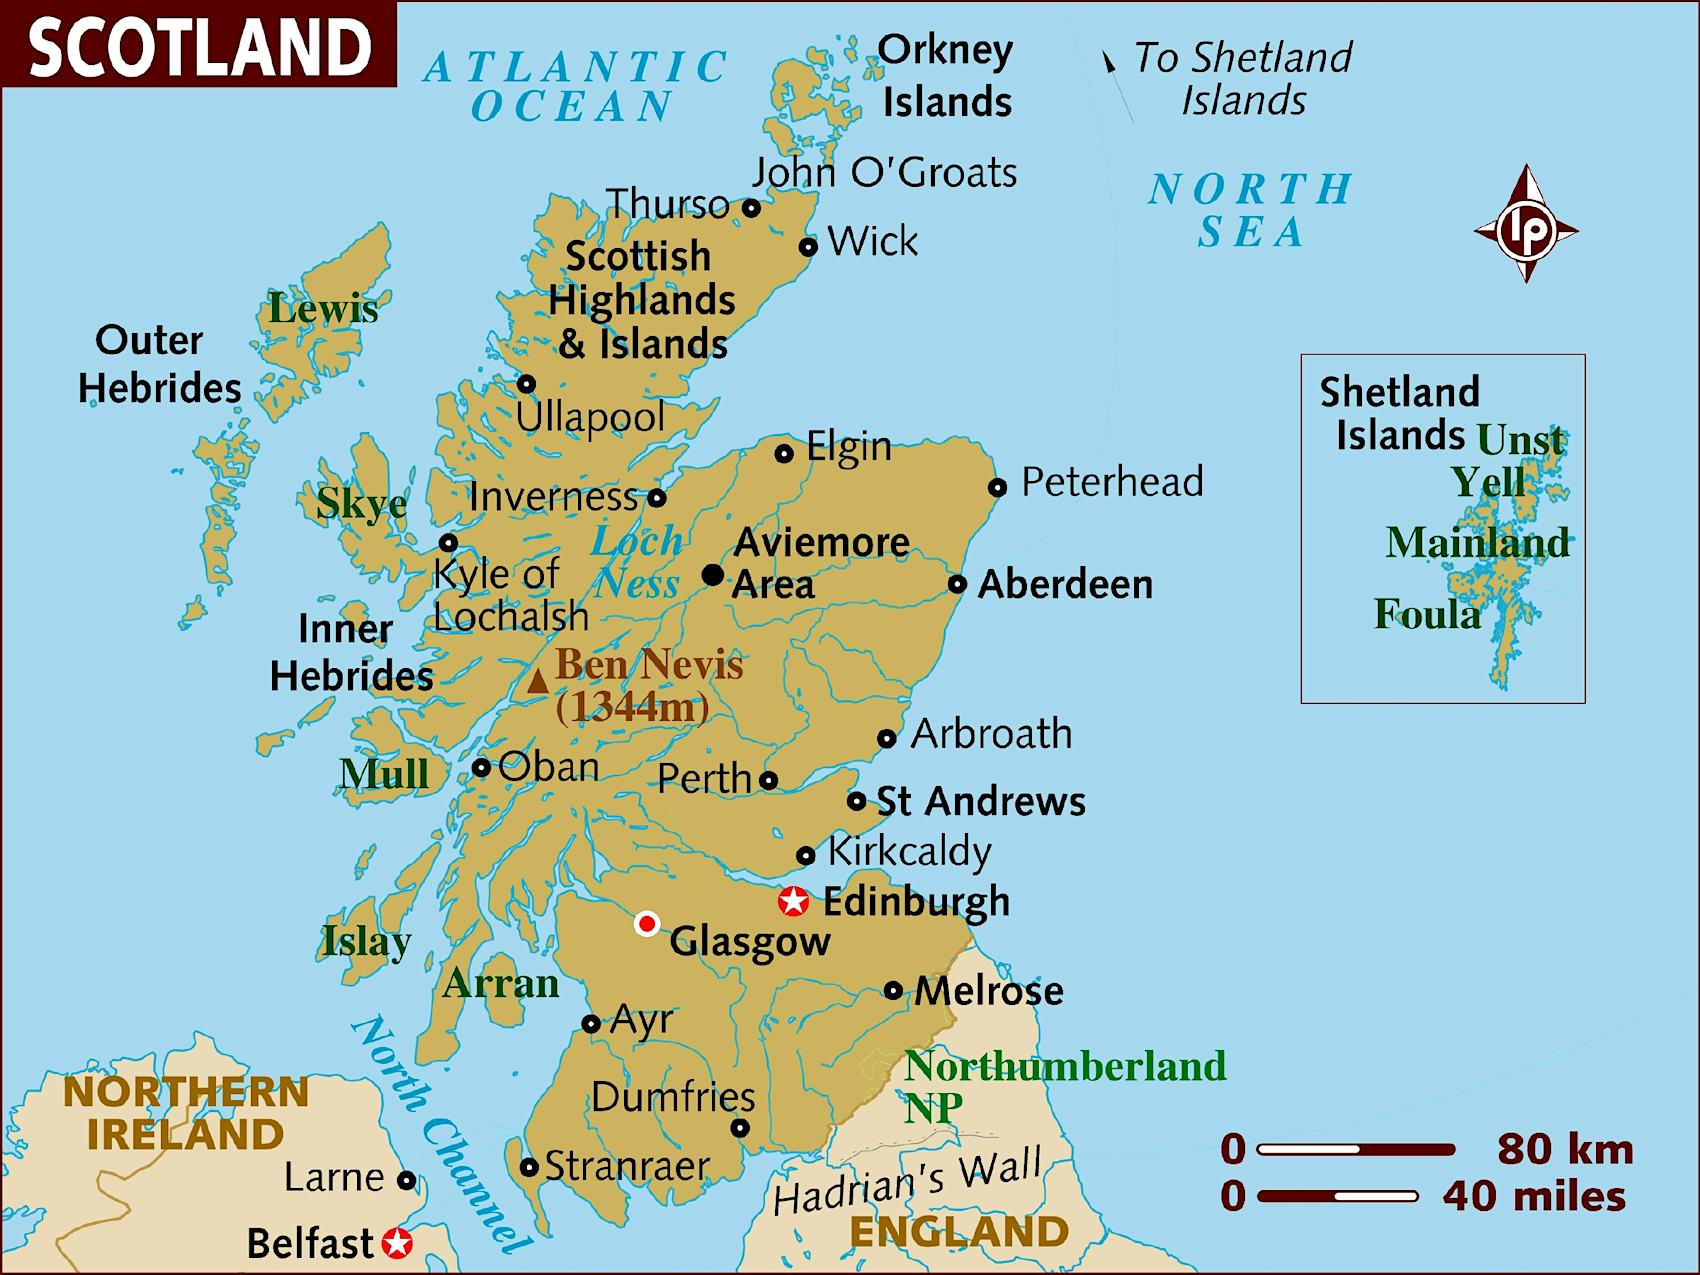 Scotland Map ?auto=format&fit=crop&sharp=10&vib=20&ixlib=react 8.6.4&w=850&q=50&dpr=2